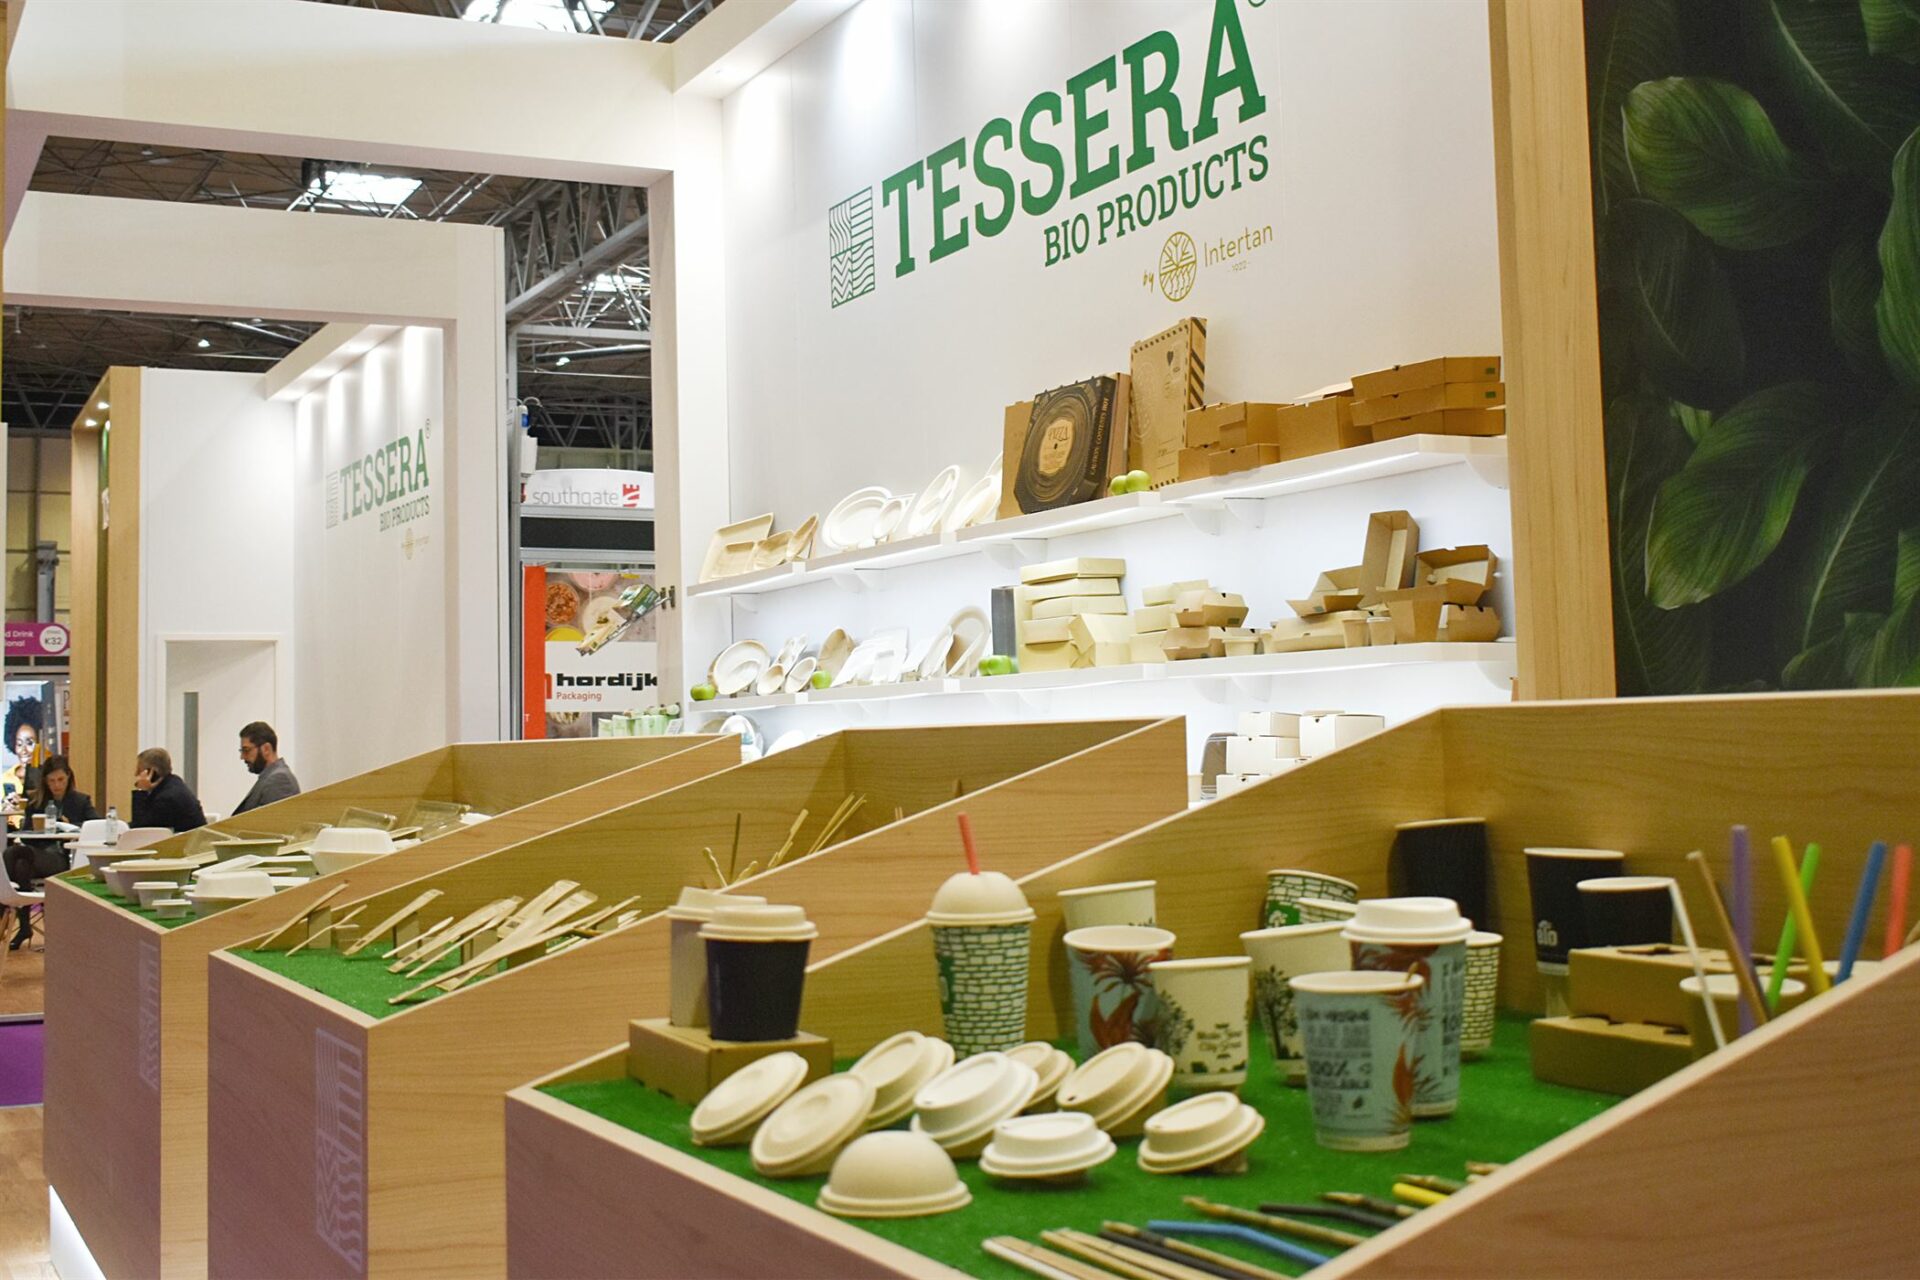 ΤESSERA Bio Products® in Großbritannien für die Packaging Innovations Expo | TESSERA Bio Products®